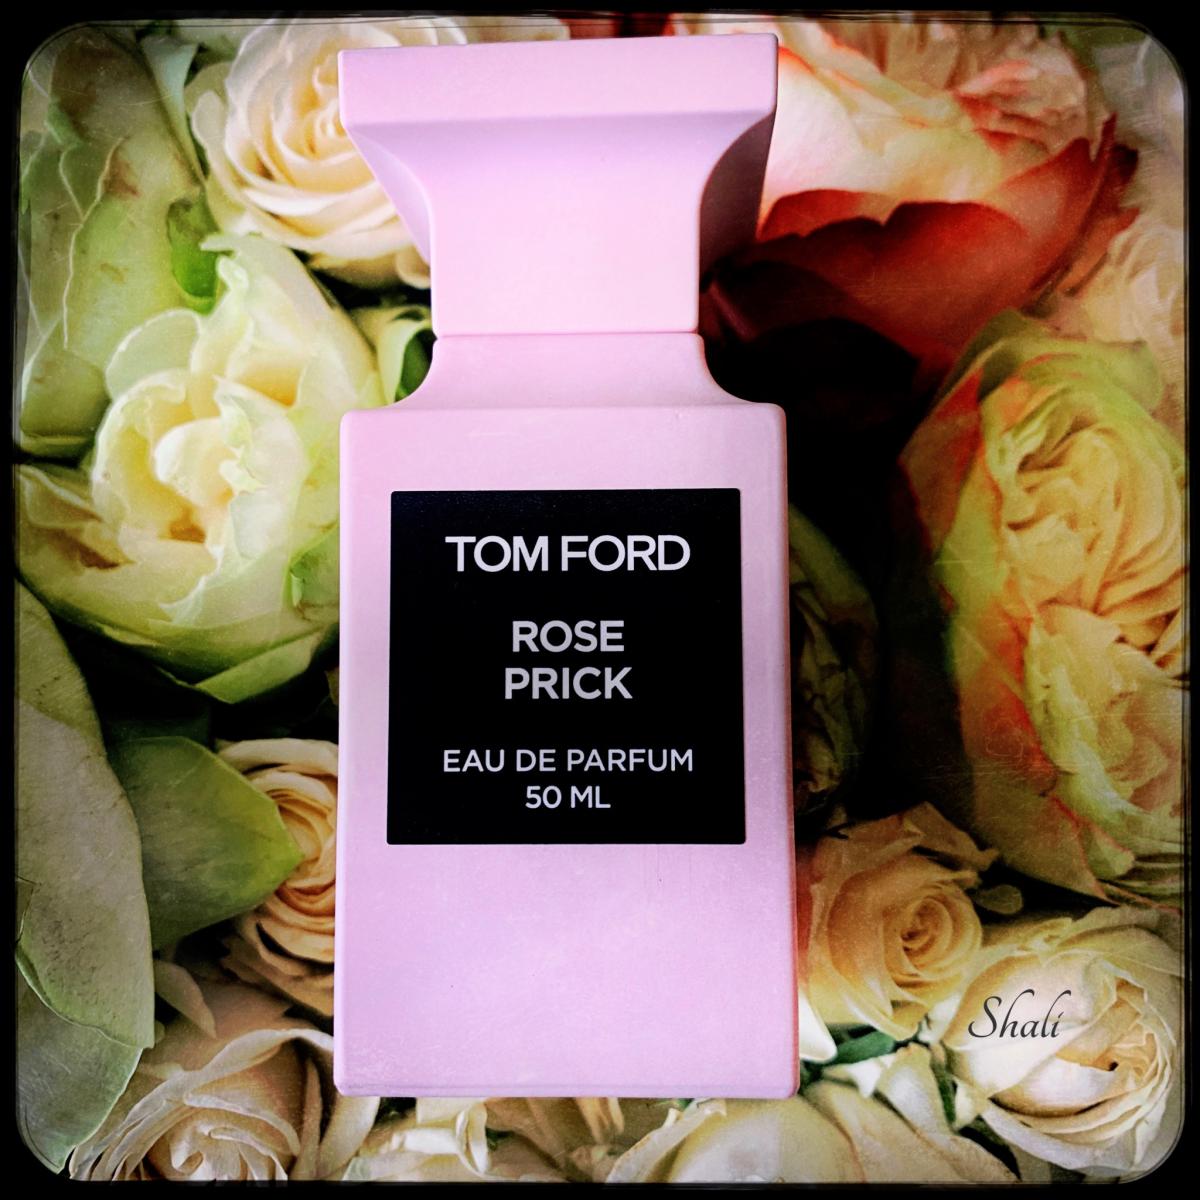 Rose Prick Tom Ford Parfum - ein neues Parfum für Frauen und Männer 2020